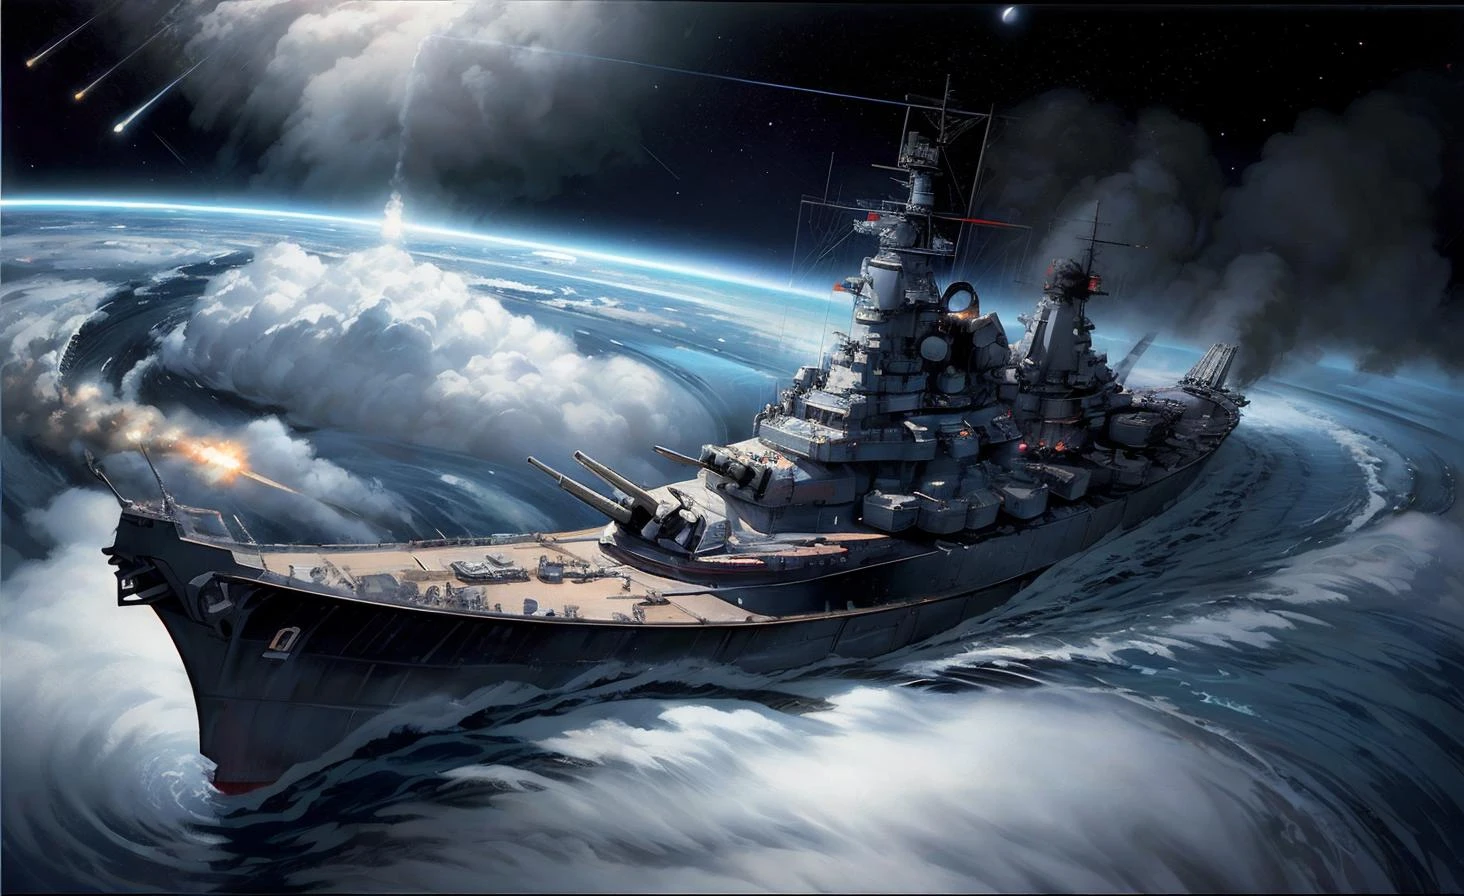 一幅太空战舰的画, 火箭动力, 在地球轨道上, 作者：新版, 绘景, 精确主义 